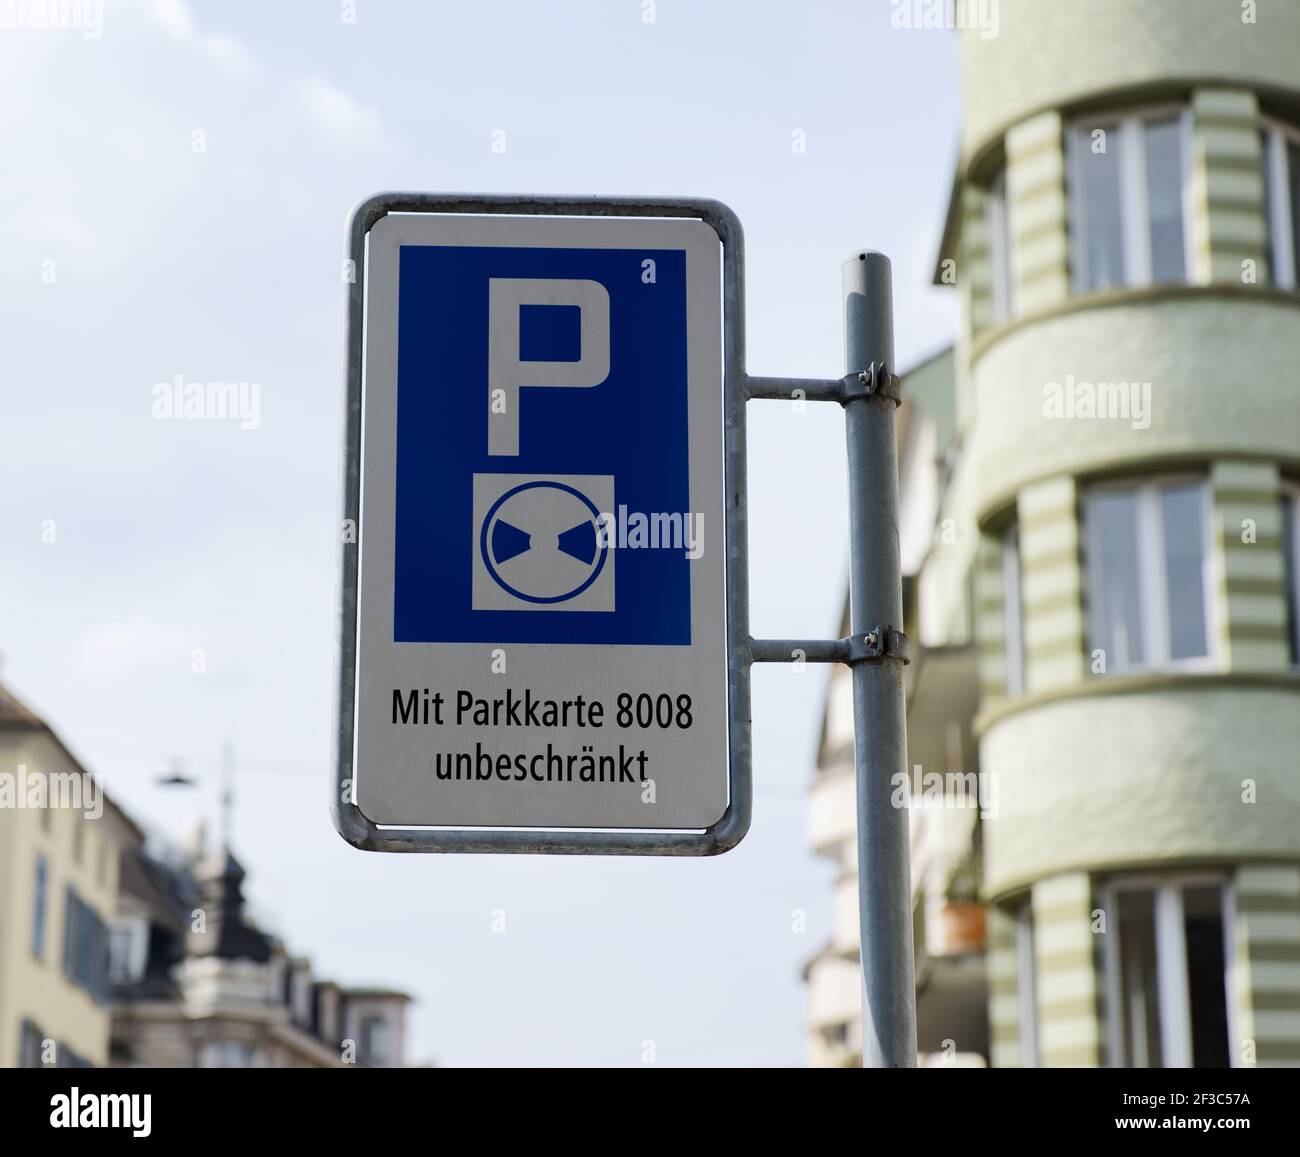 Verkehrsschild, deutsche Übersetzung: Blaue Zone, Parken nur mit Parkscheibe  erlaubt, mit Parkkarte 8008 unbegrenztes Parken erlaubt Stockfotografie -  Alamy